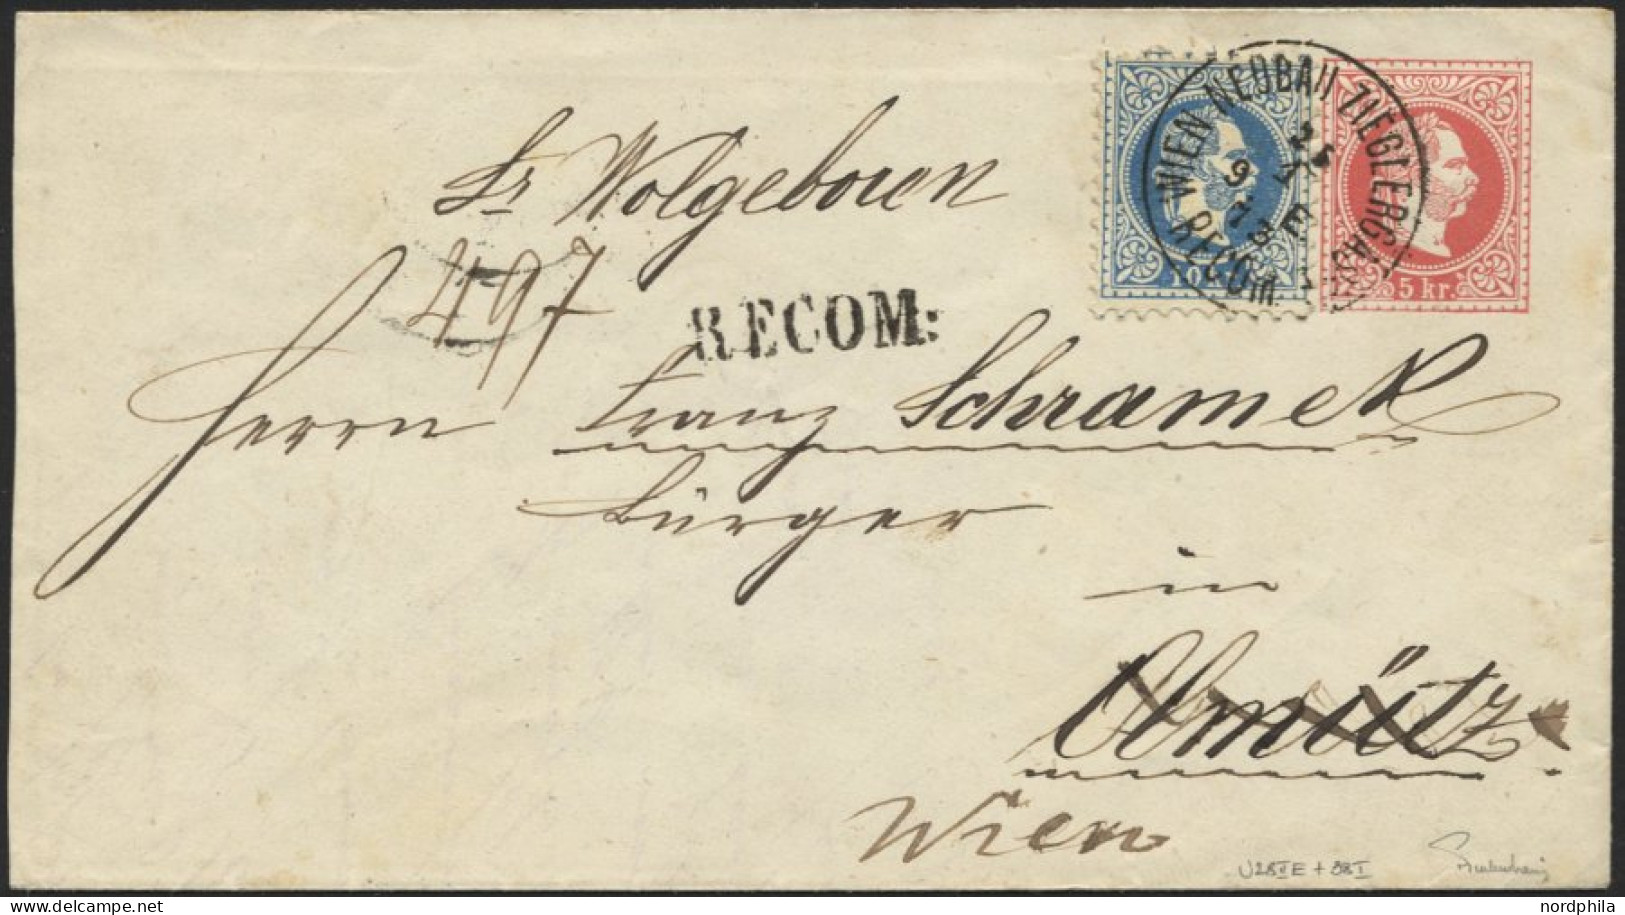 ÖSTERREICH 38I BRIEF, 1873, 10 Kr. Blau, Grober Druck, Als Zusatzfrankatur Auf 5 Kr. Ganzsachenumschlag (U 28IIE), K1 WI - Oblitérés